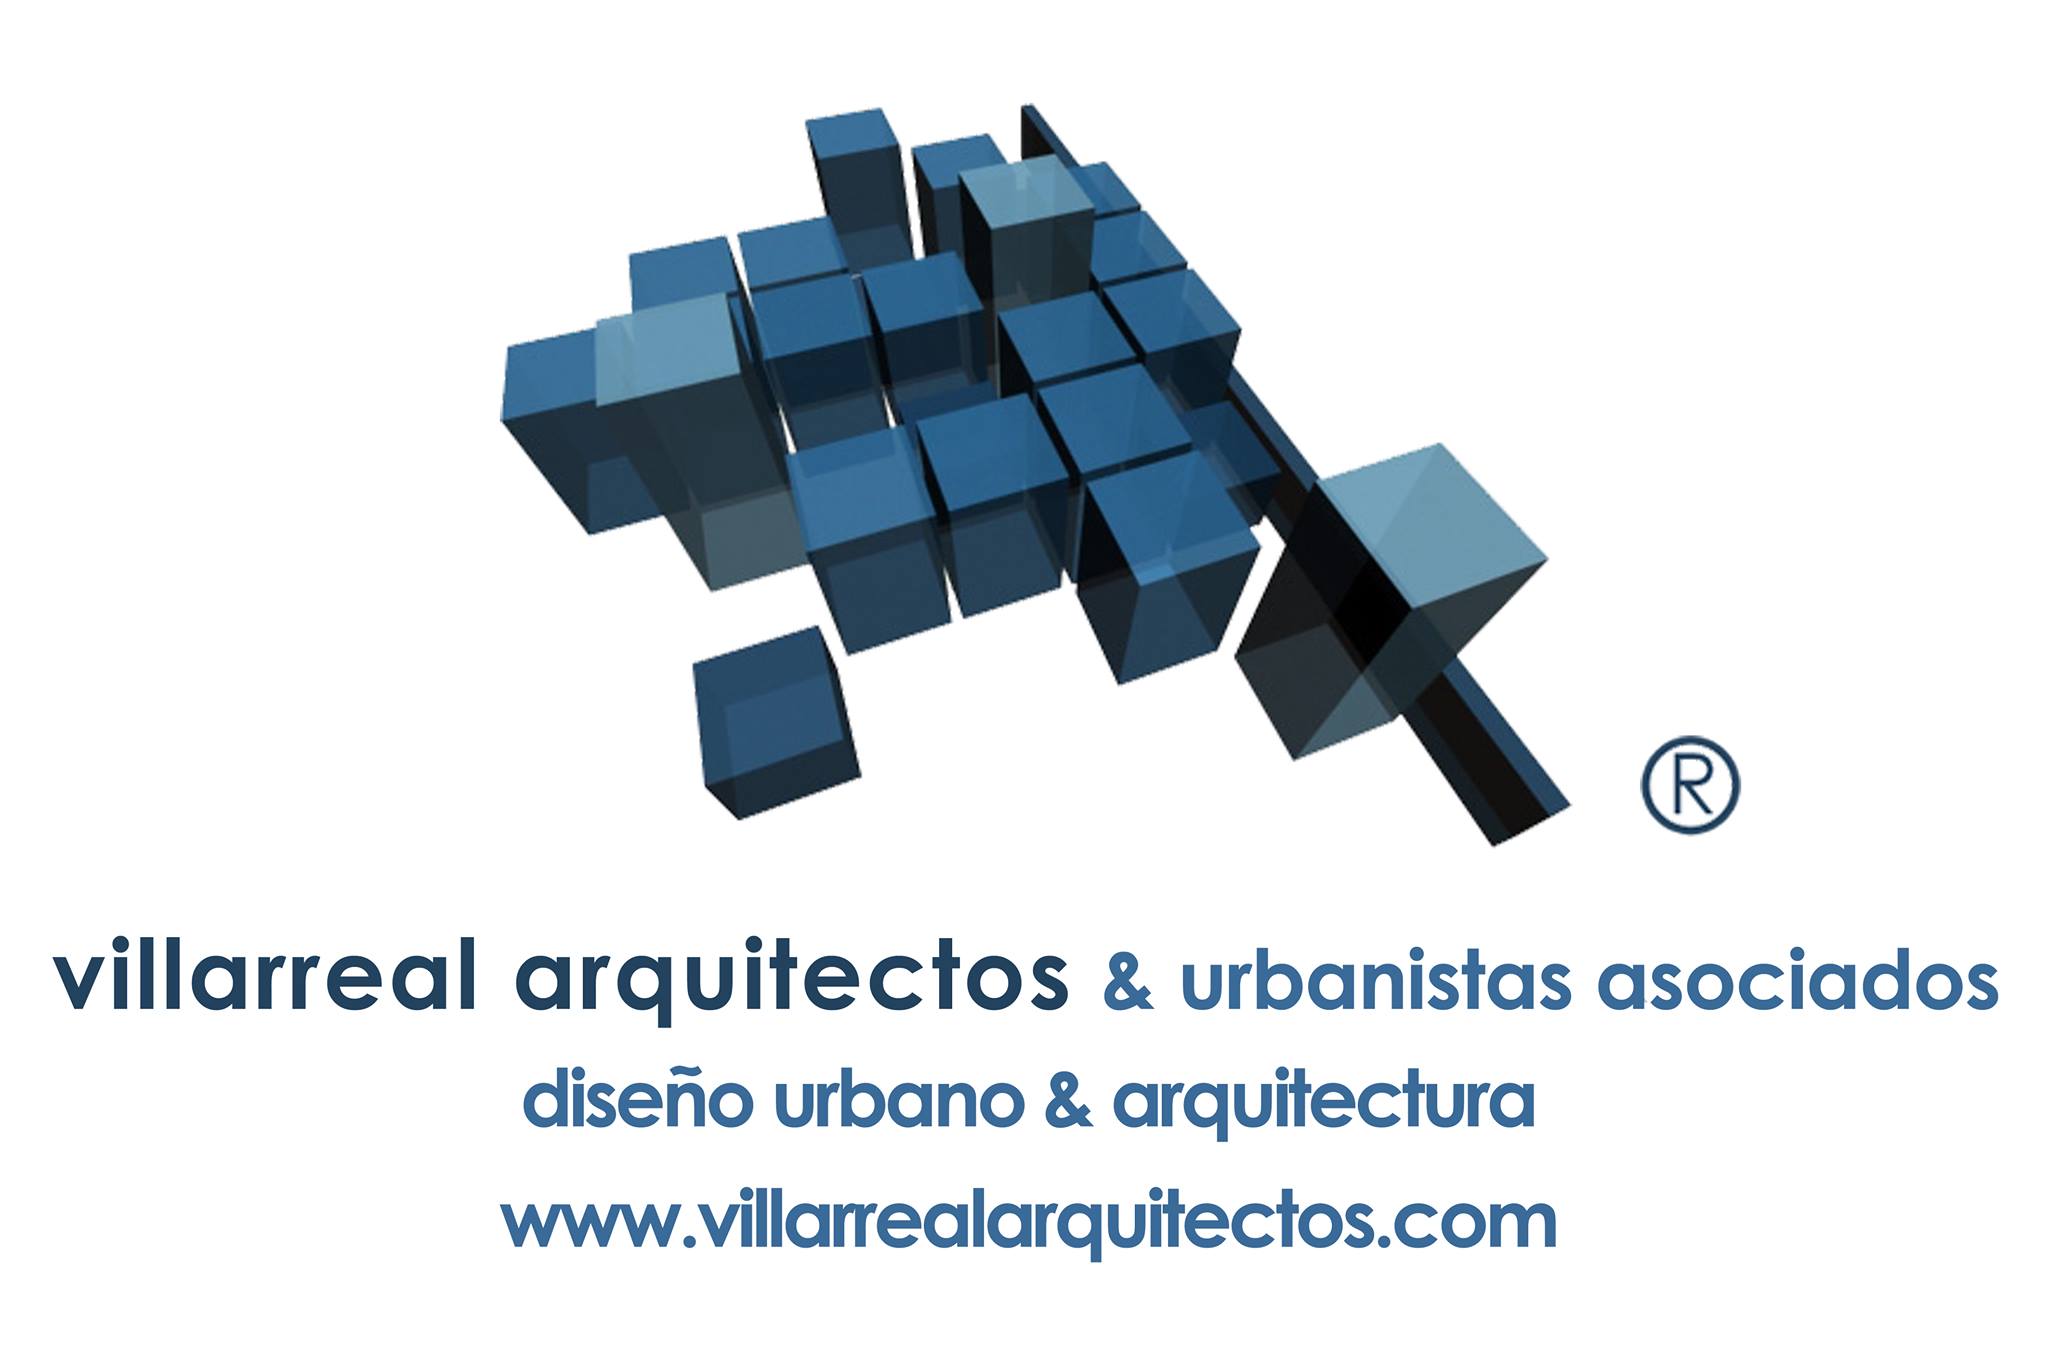 Villarreal Arquitectos & Urbanistas Asociados